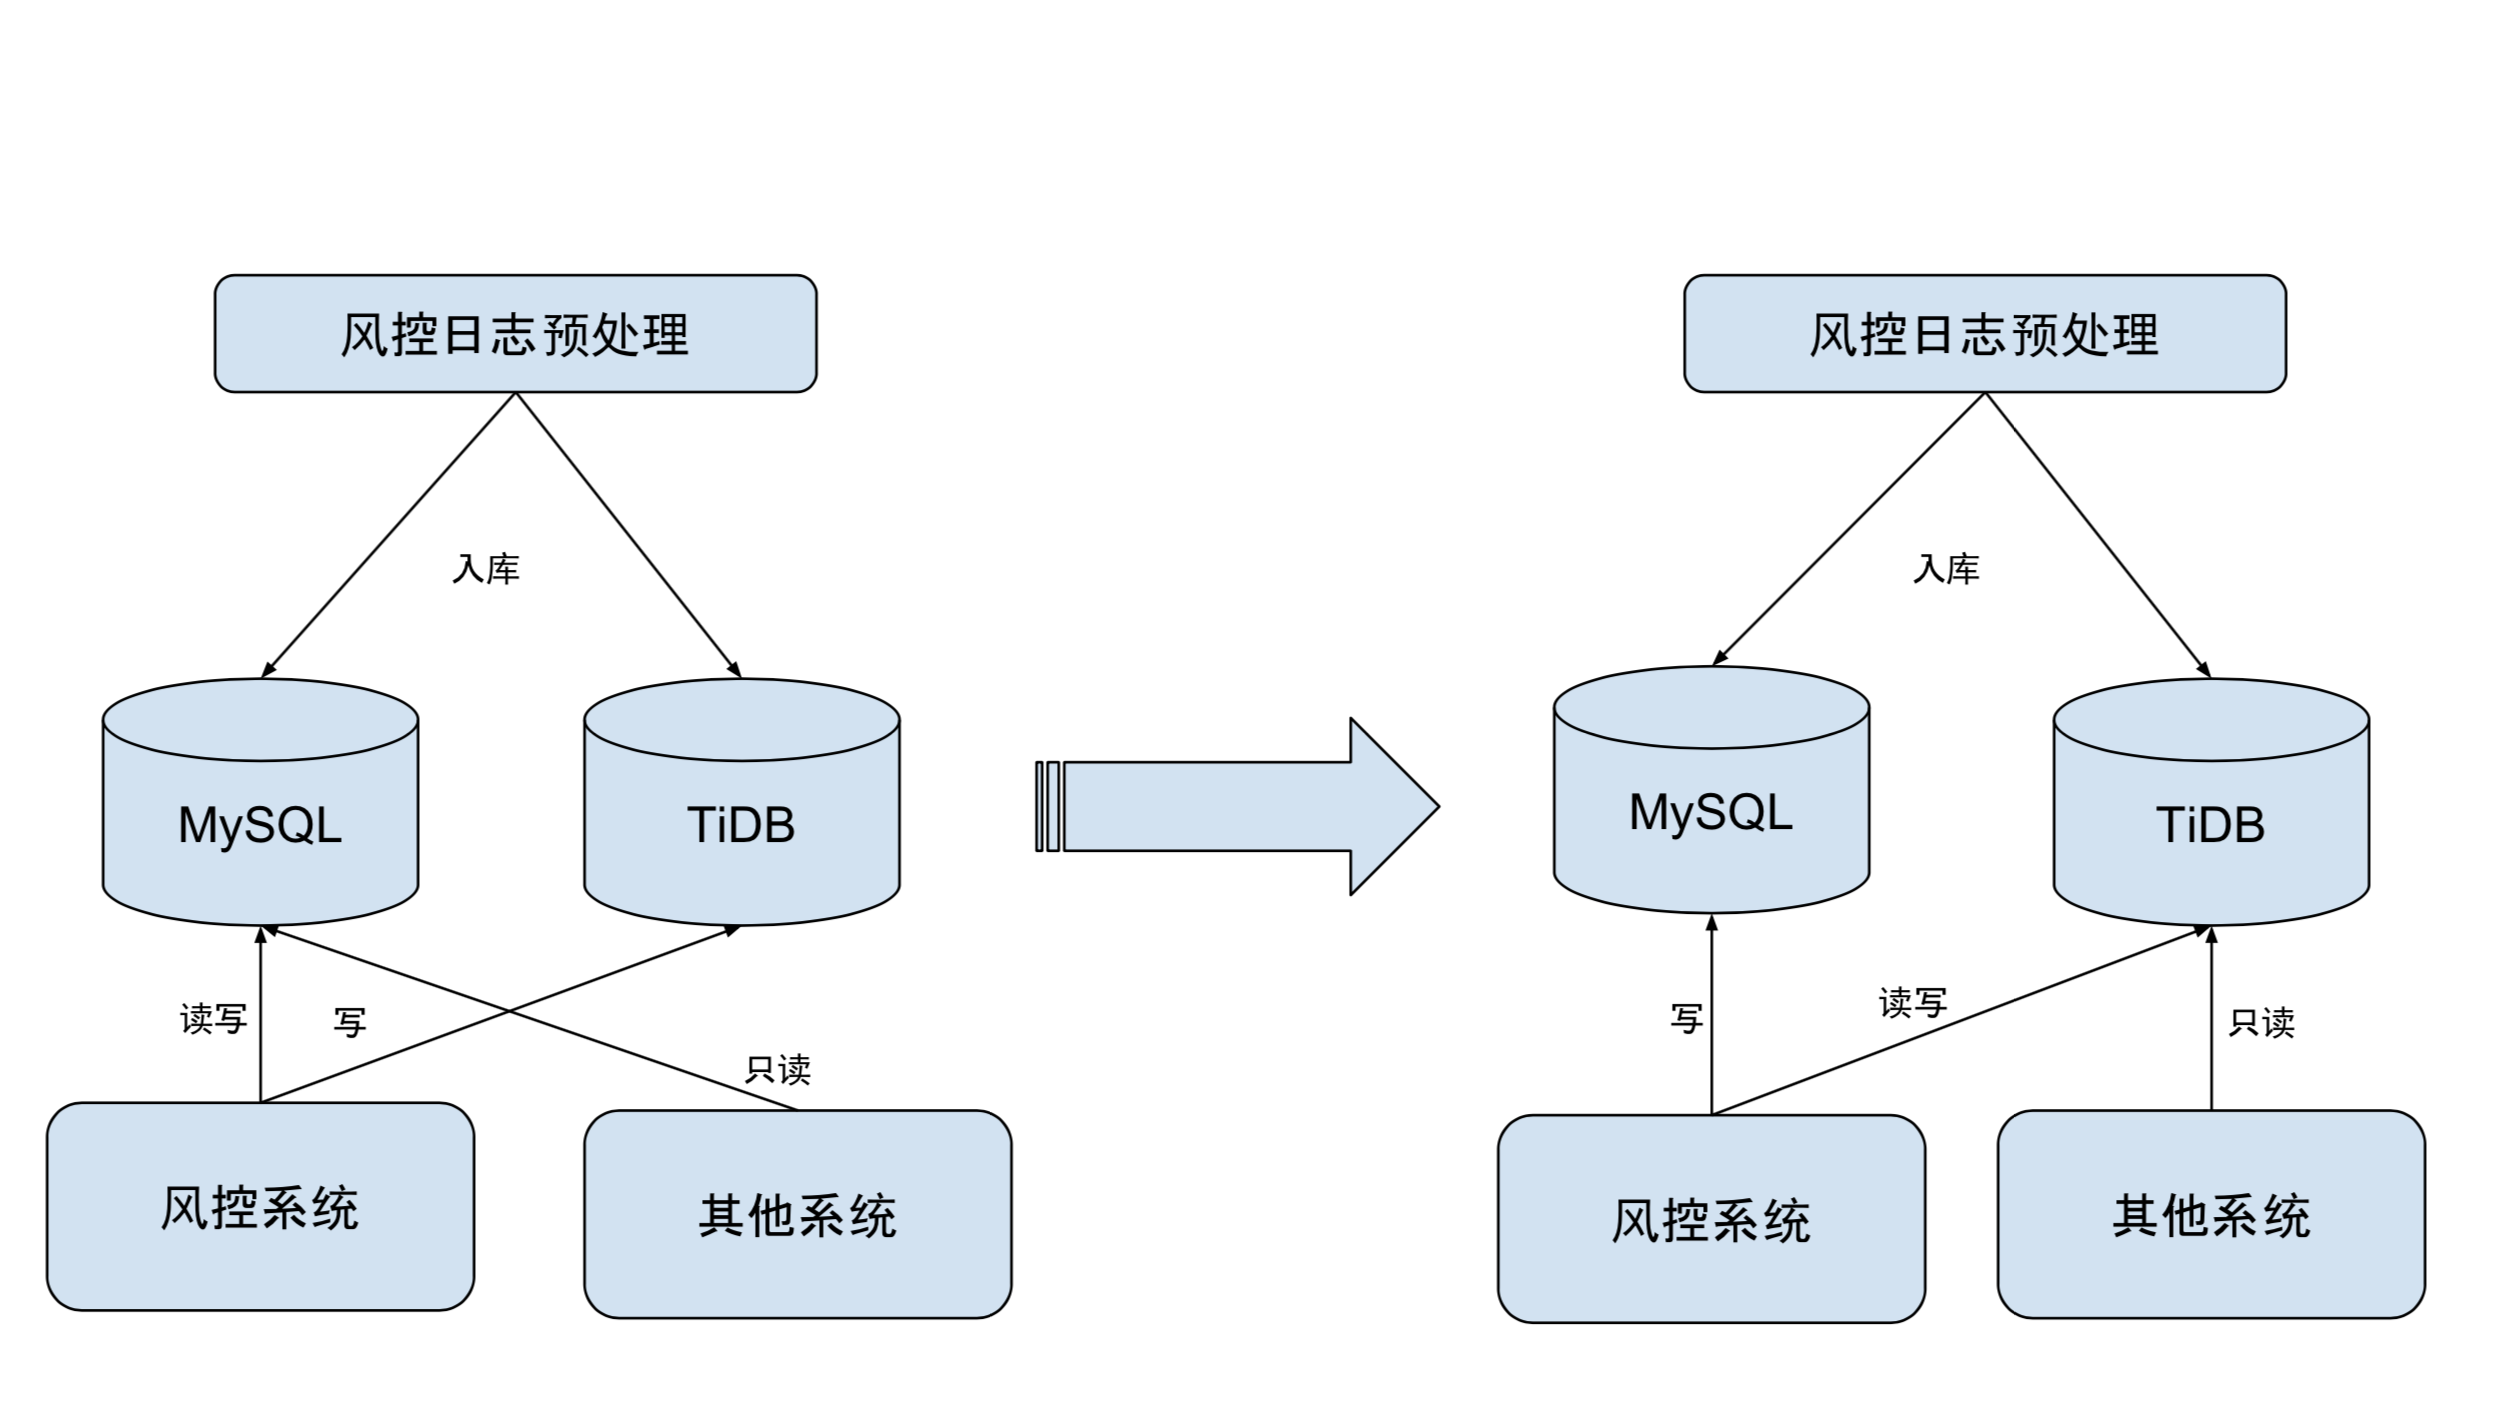 图 3 迁移过程图：保持双写，逐步从读 MySQL 改为读 TiDB